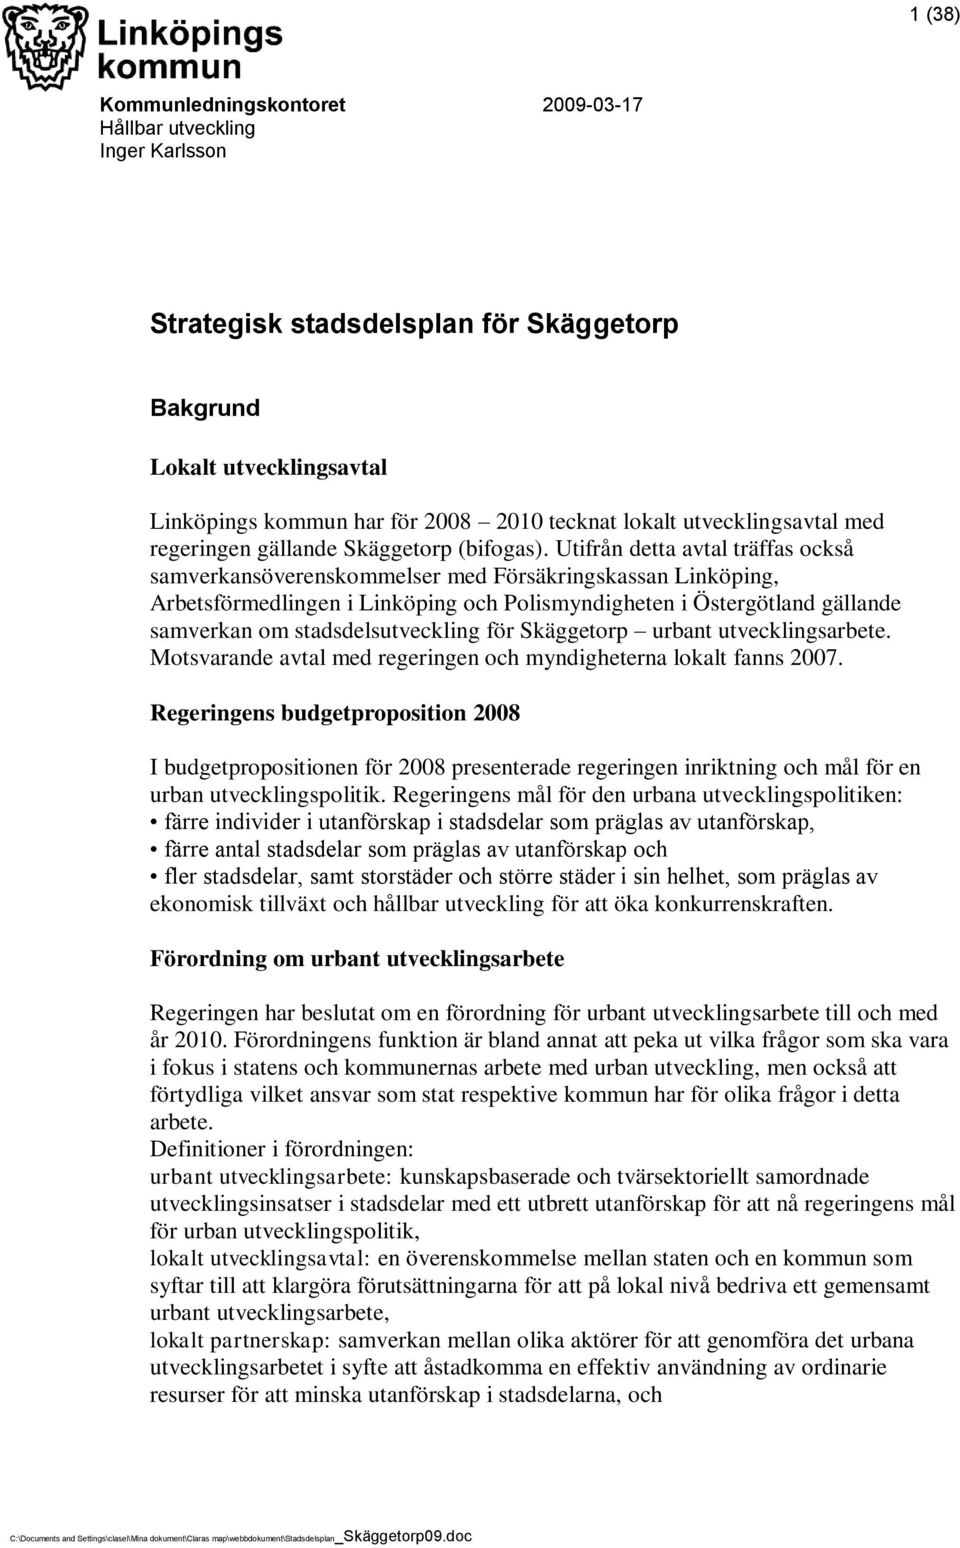 Utifrån detta avtal träffas också samverkansöverenskommelser med Försäkringskassan Linköping, Arbetsförmedlingen i Linköping och Polismyndigheten i Östergötland gällande samverkan om